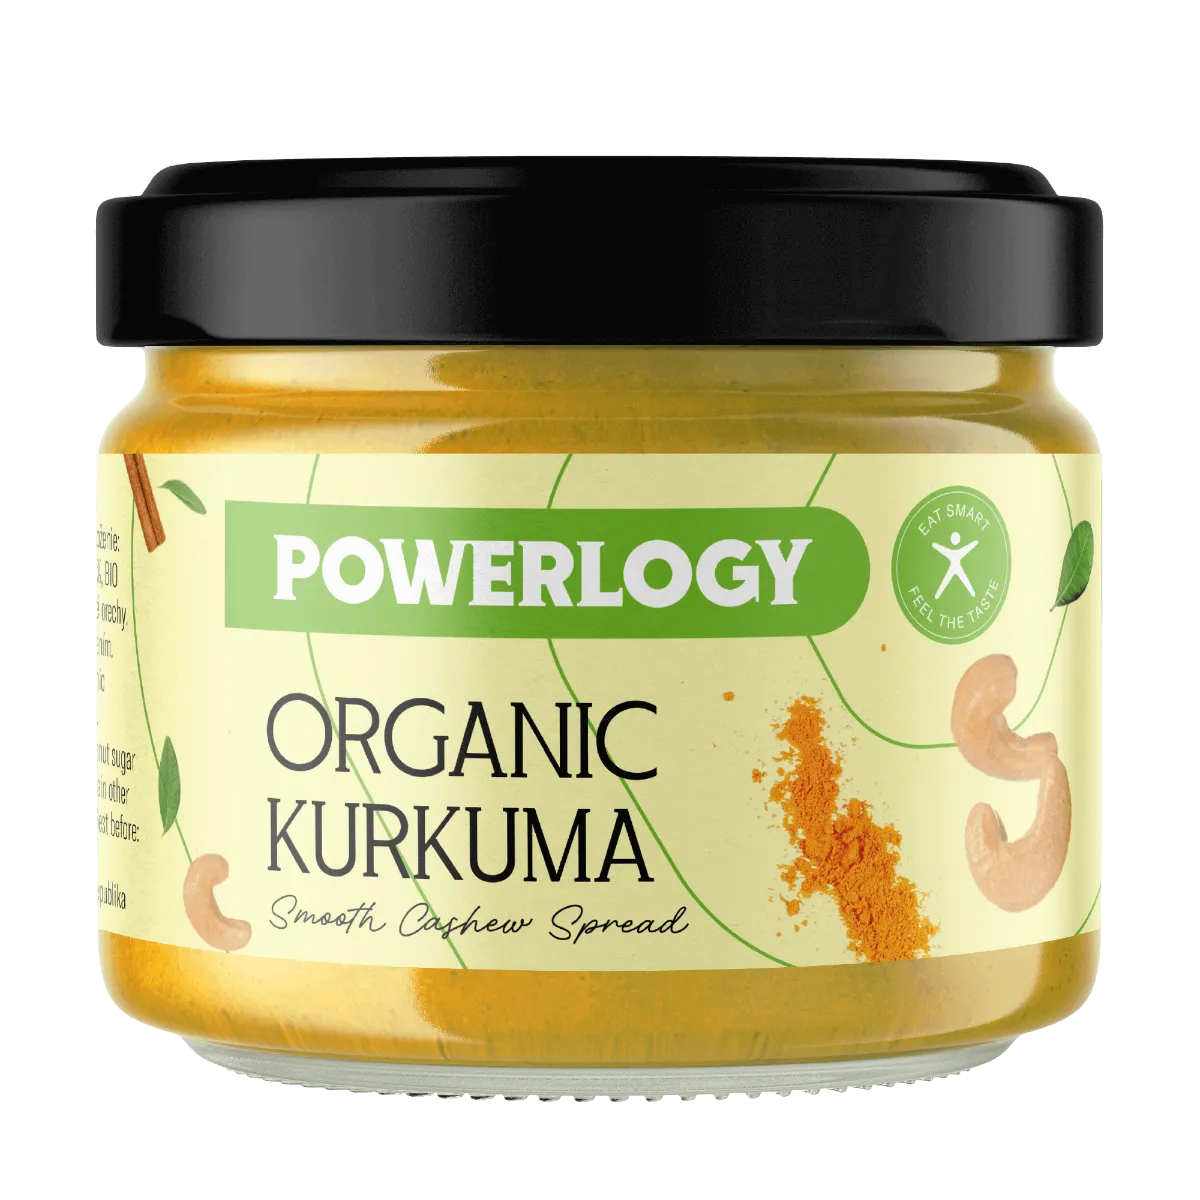 Powerlogy Organic Kurkuma Cream